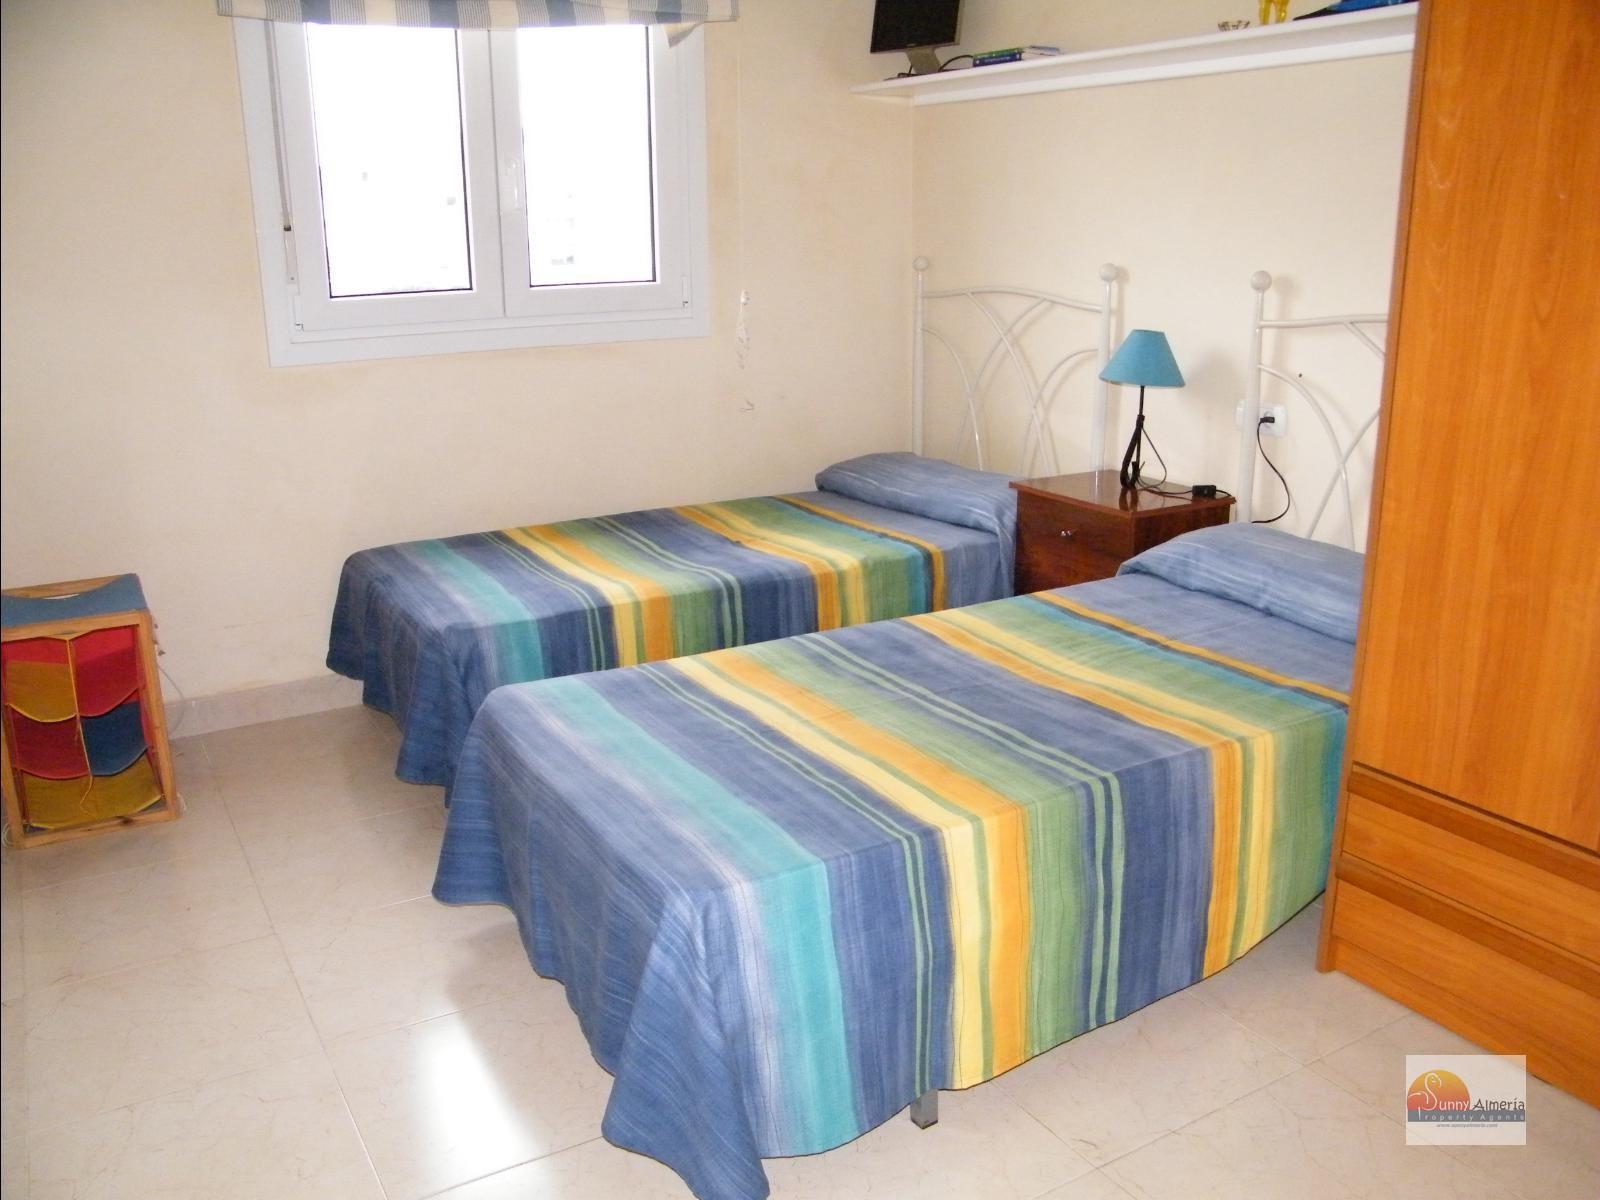 Luxury Apartment for rent in Calle Fosforito 4 (Roquetas de Mar), 750 €/month (Season)